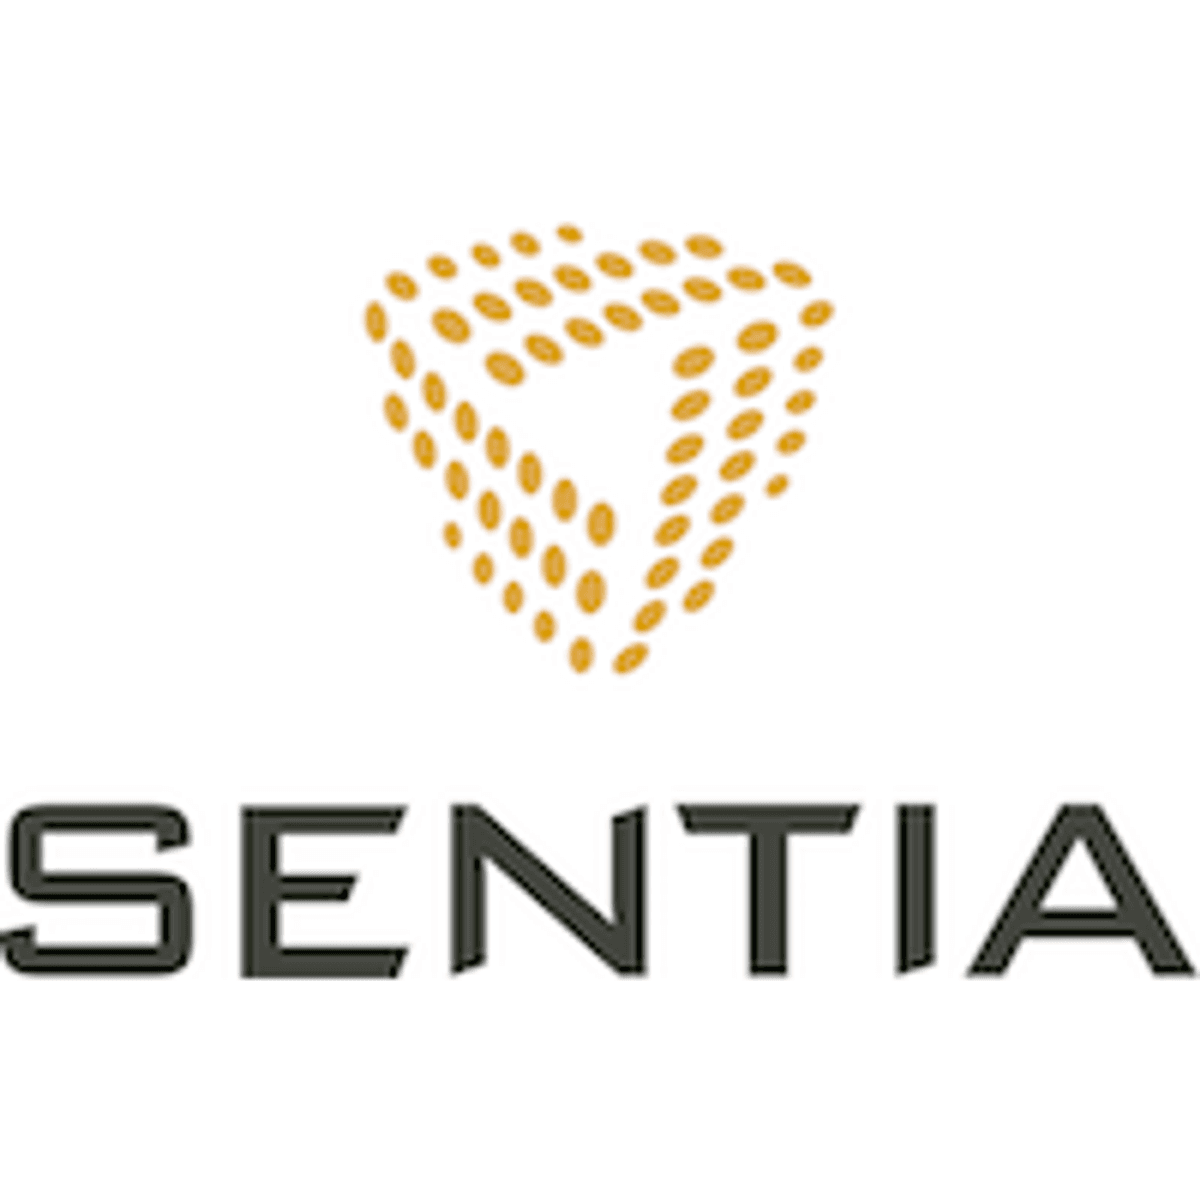 Advocatenkantoor NautaDutilh kiest voor Sentia als managed service partner image